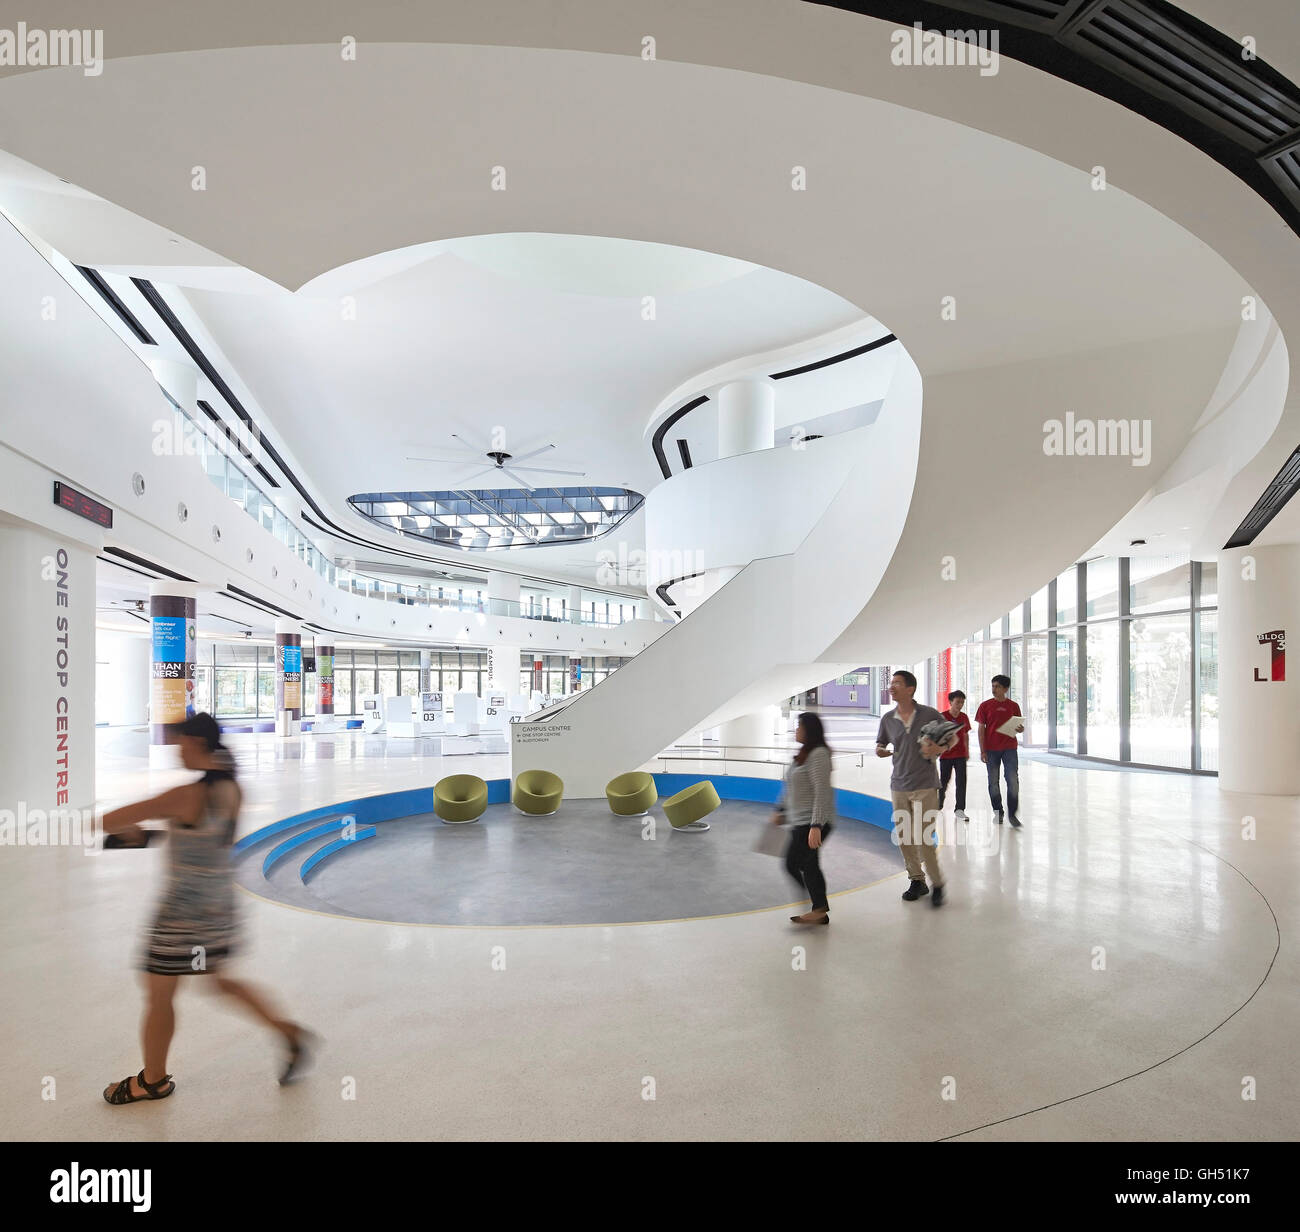 Erdgeschoss-Foyer mit Wendeltreppe. Singapur-Hochschule für Technik und Design, Singapur, Singapur. Architekt: UNStudio, 2015. Stockfoto